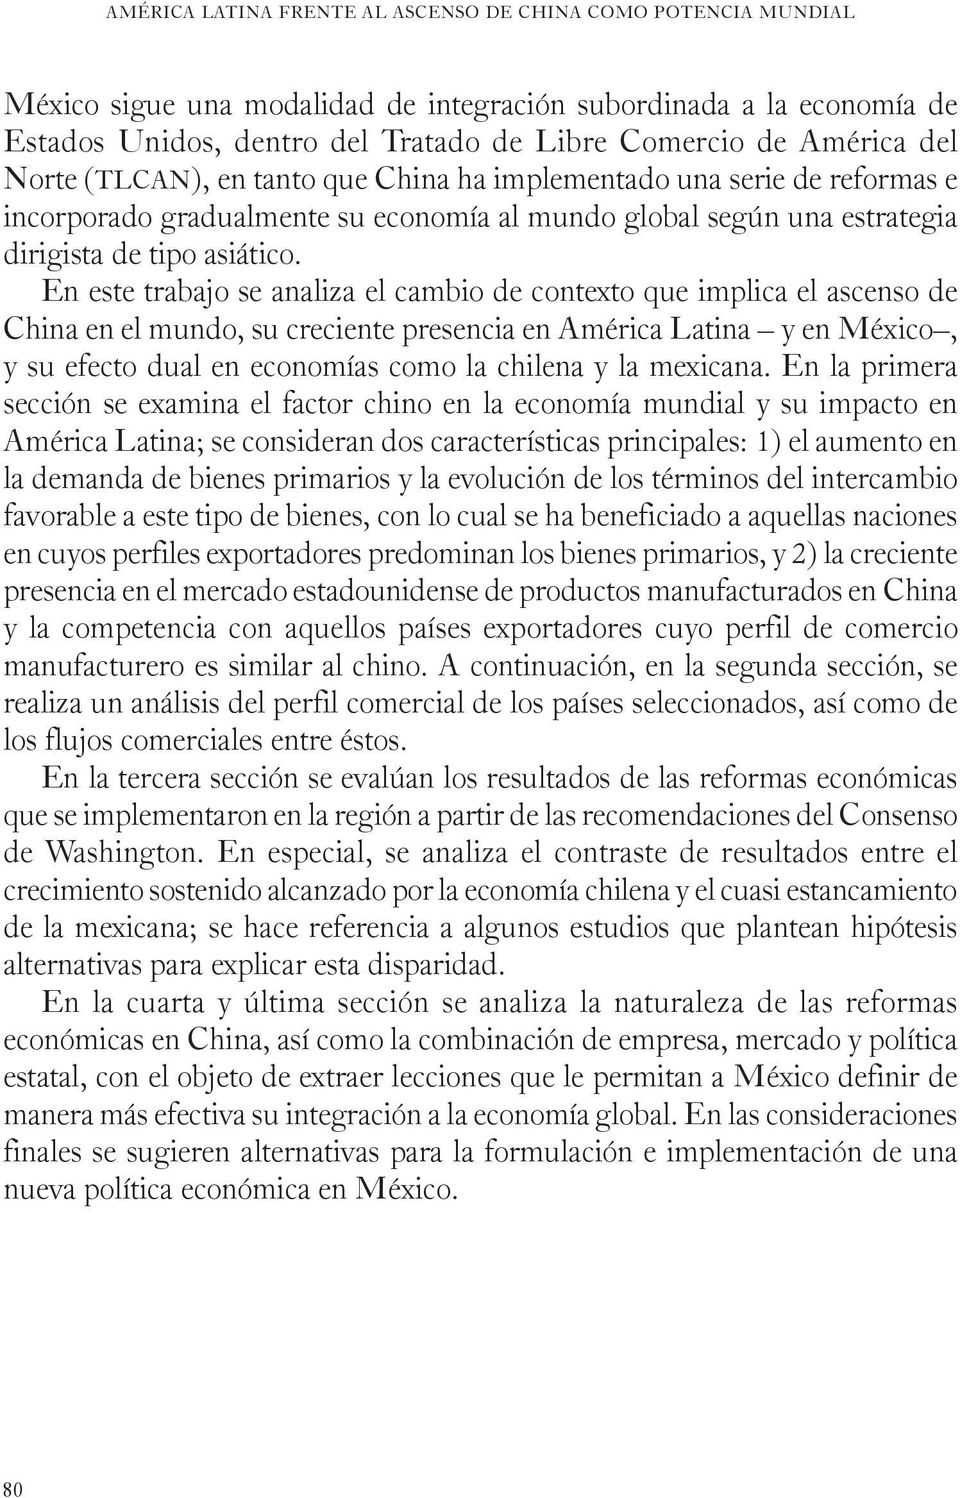 En este trabajo se analiza el cambio de contexto que implica el ascenso de China en el mundo, su creciente presencia en América Latina y en México, y su efecto dual en economías como la chilena y la